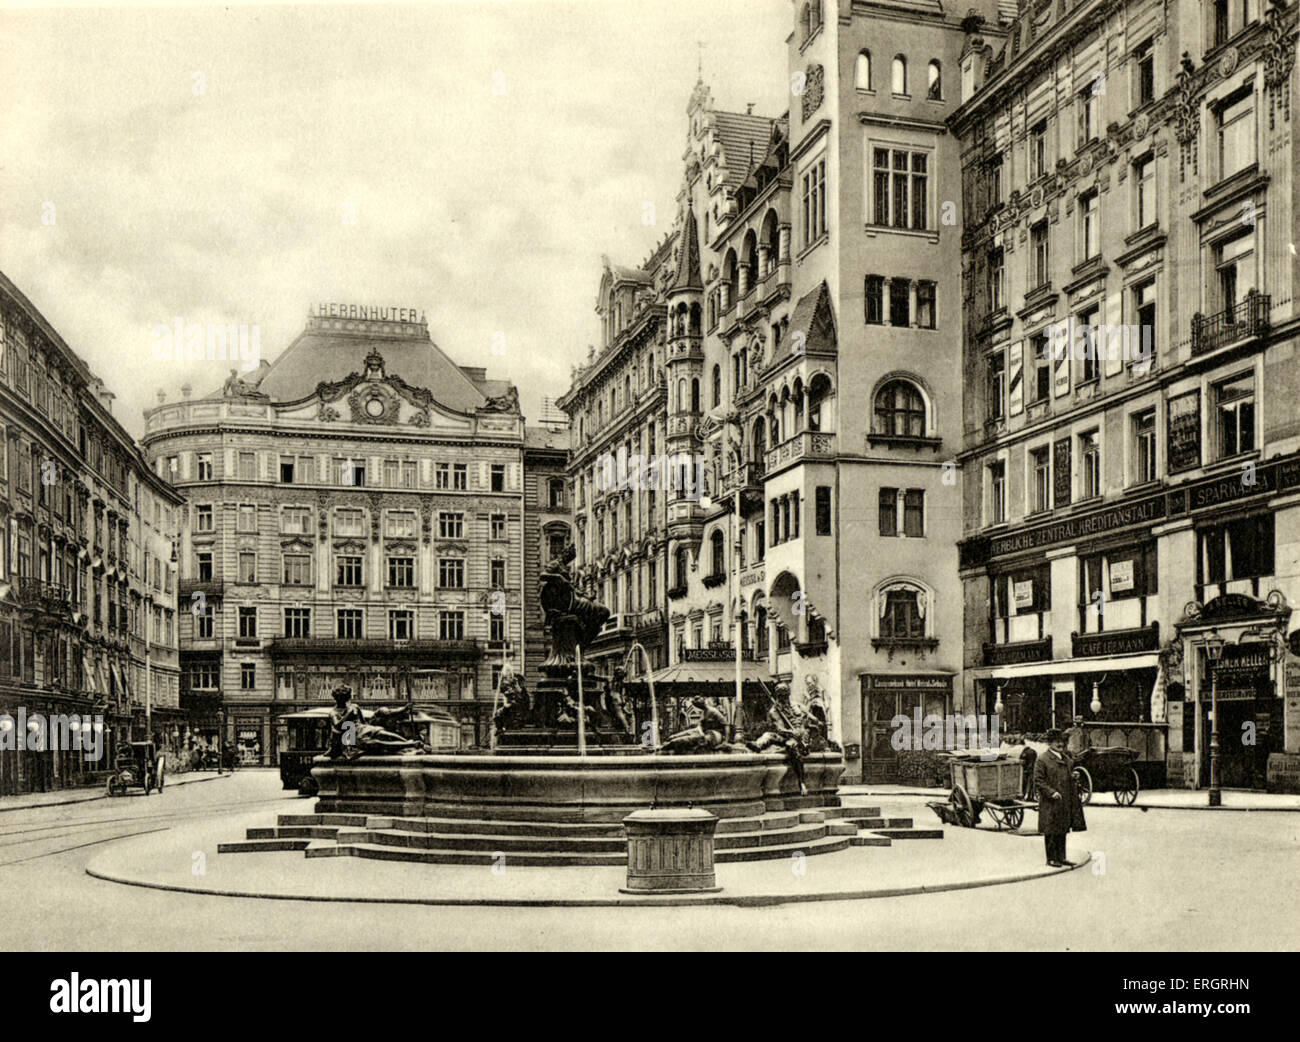 The New Market (Neuer Markt) in Vienna, at the turn of the century. Street scene. Stock Photo